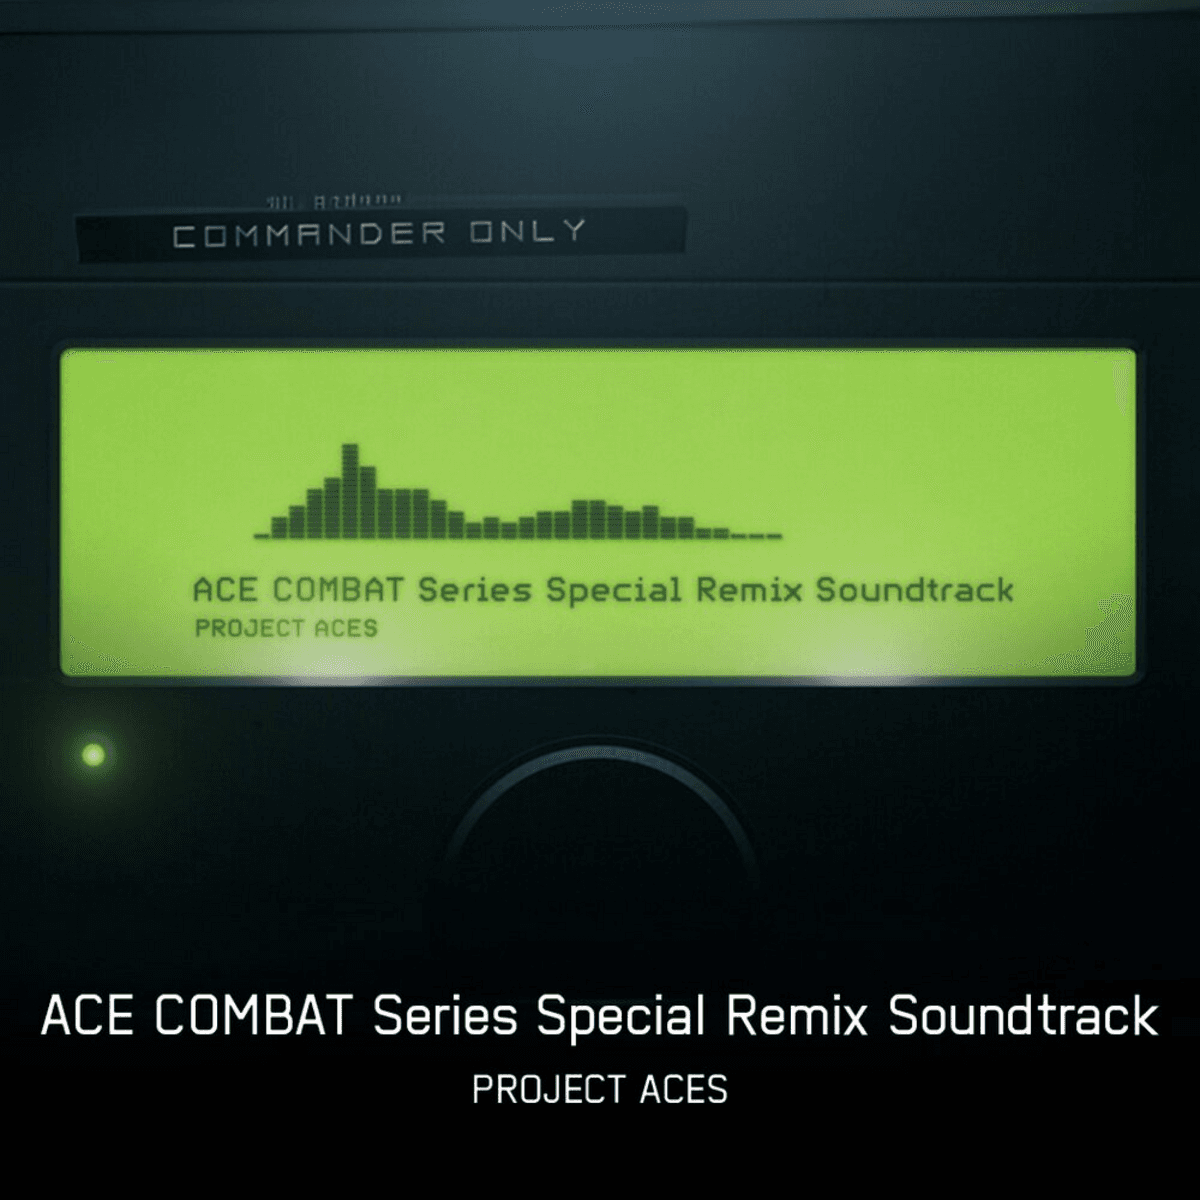 Ace Combat Series Special Remix Soundtrack